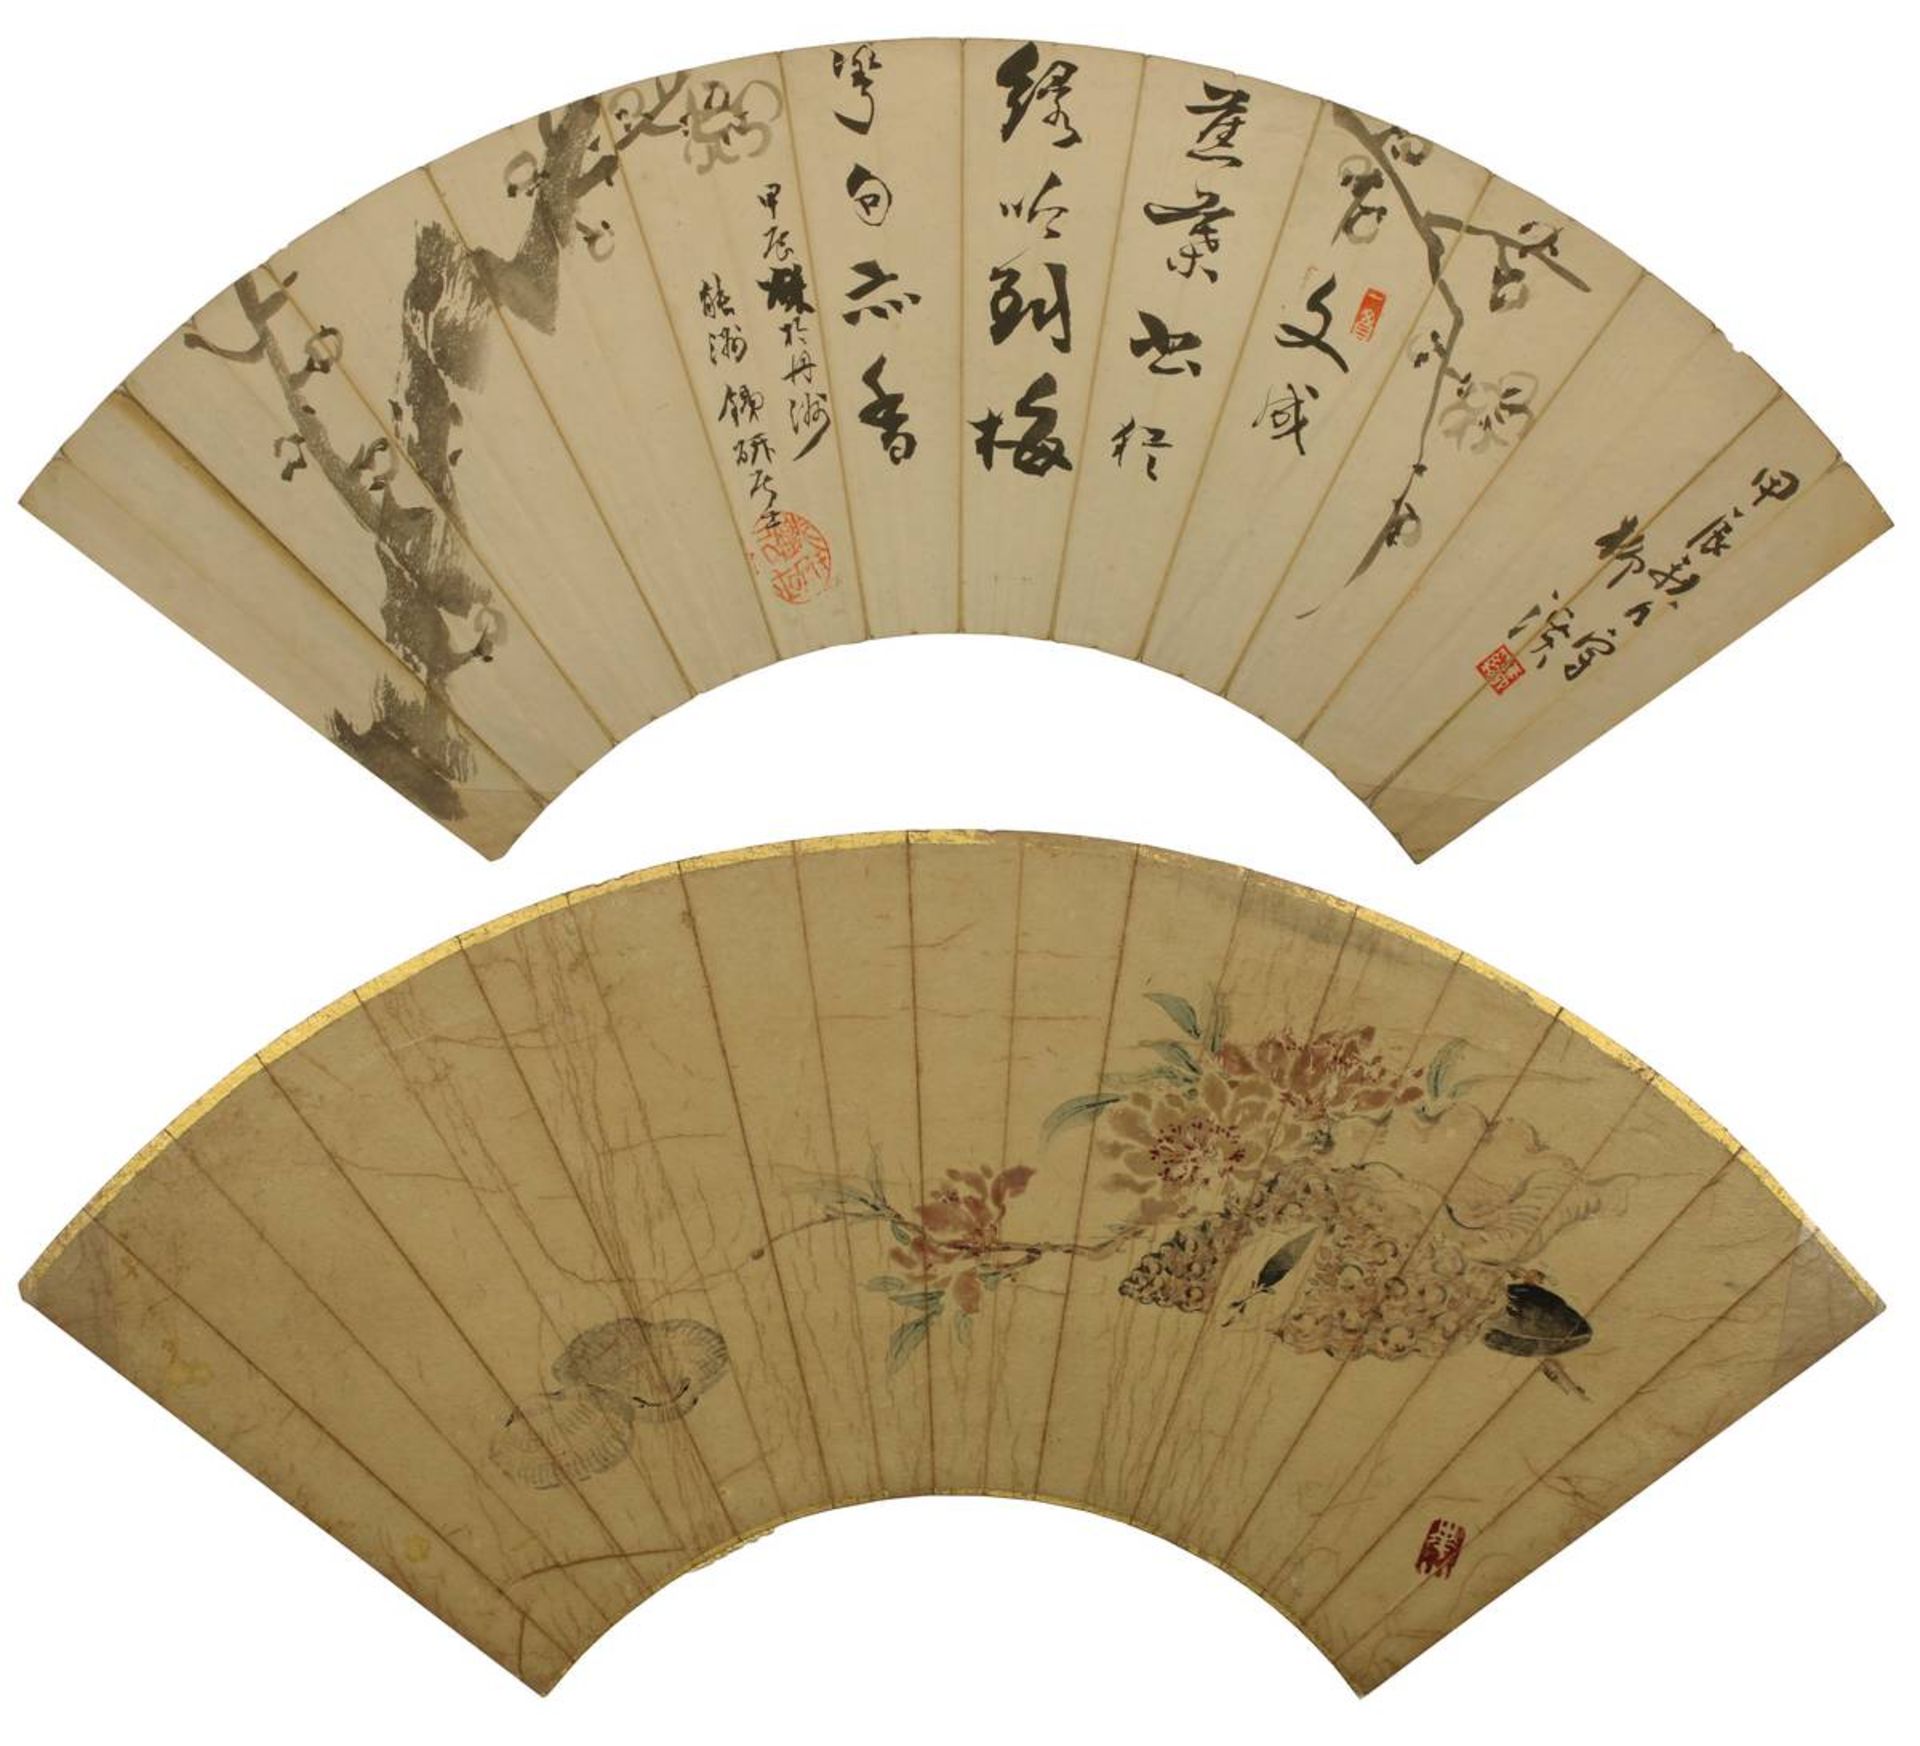 2 bemalte japanische Faltfächerblätter, jew. unter Folie mit Fotoecken auf Karton montiert, Karton